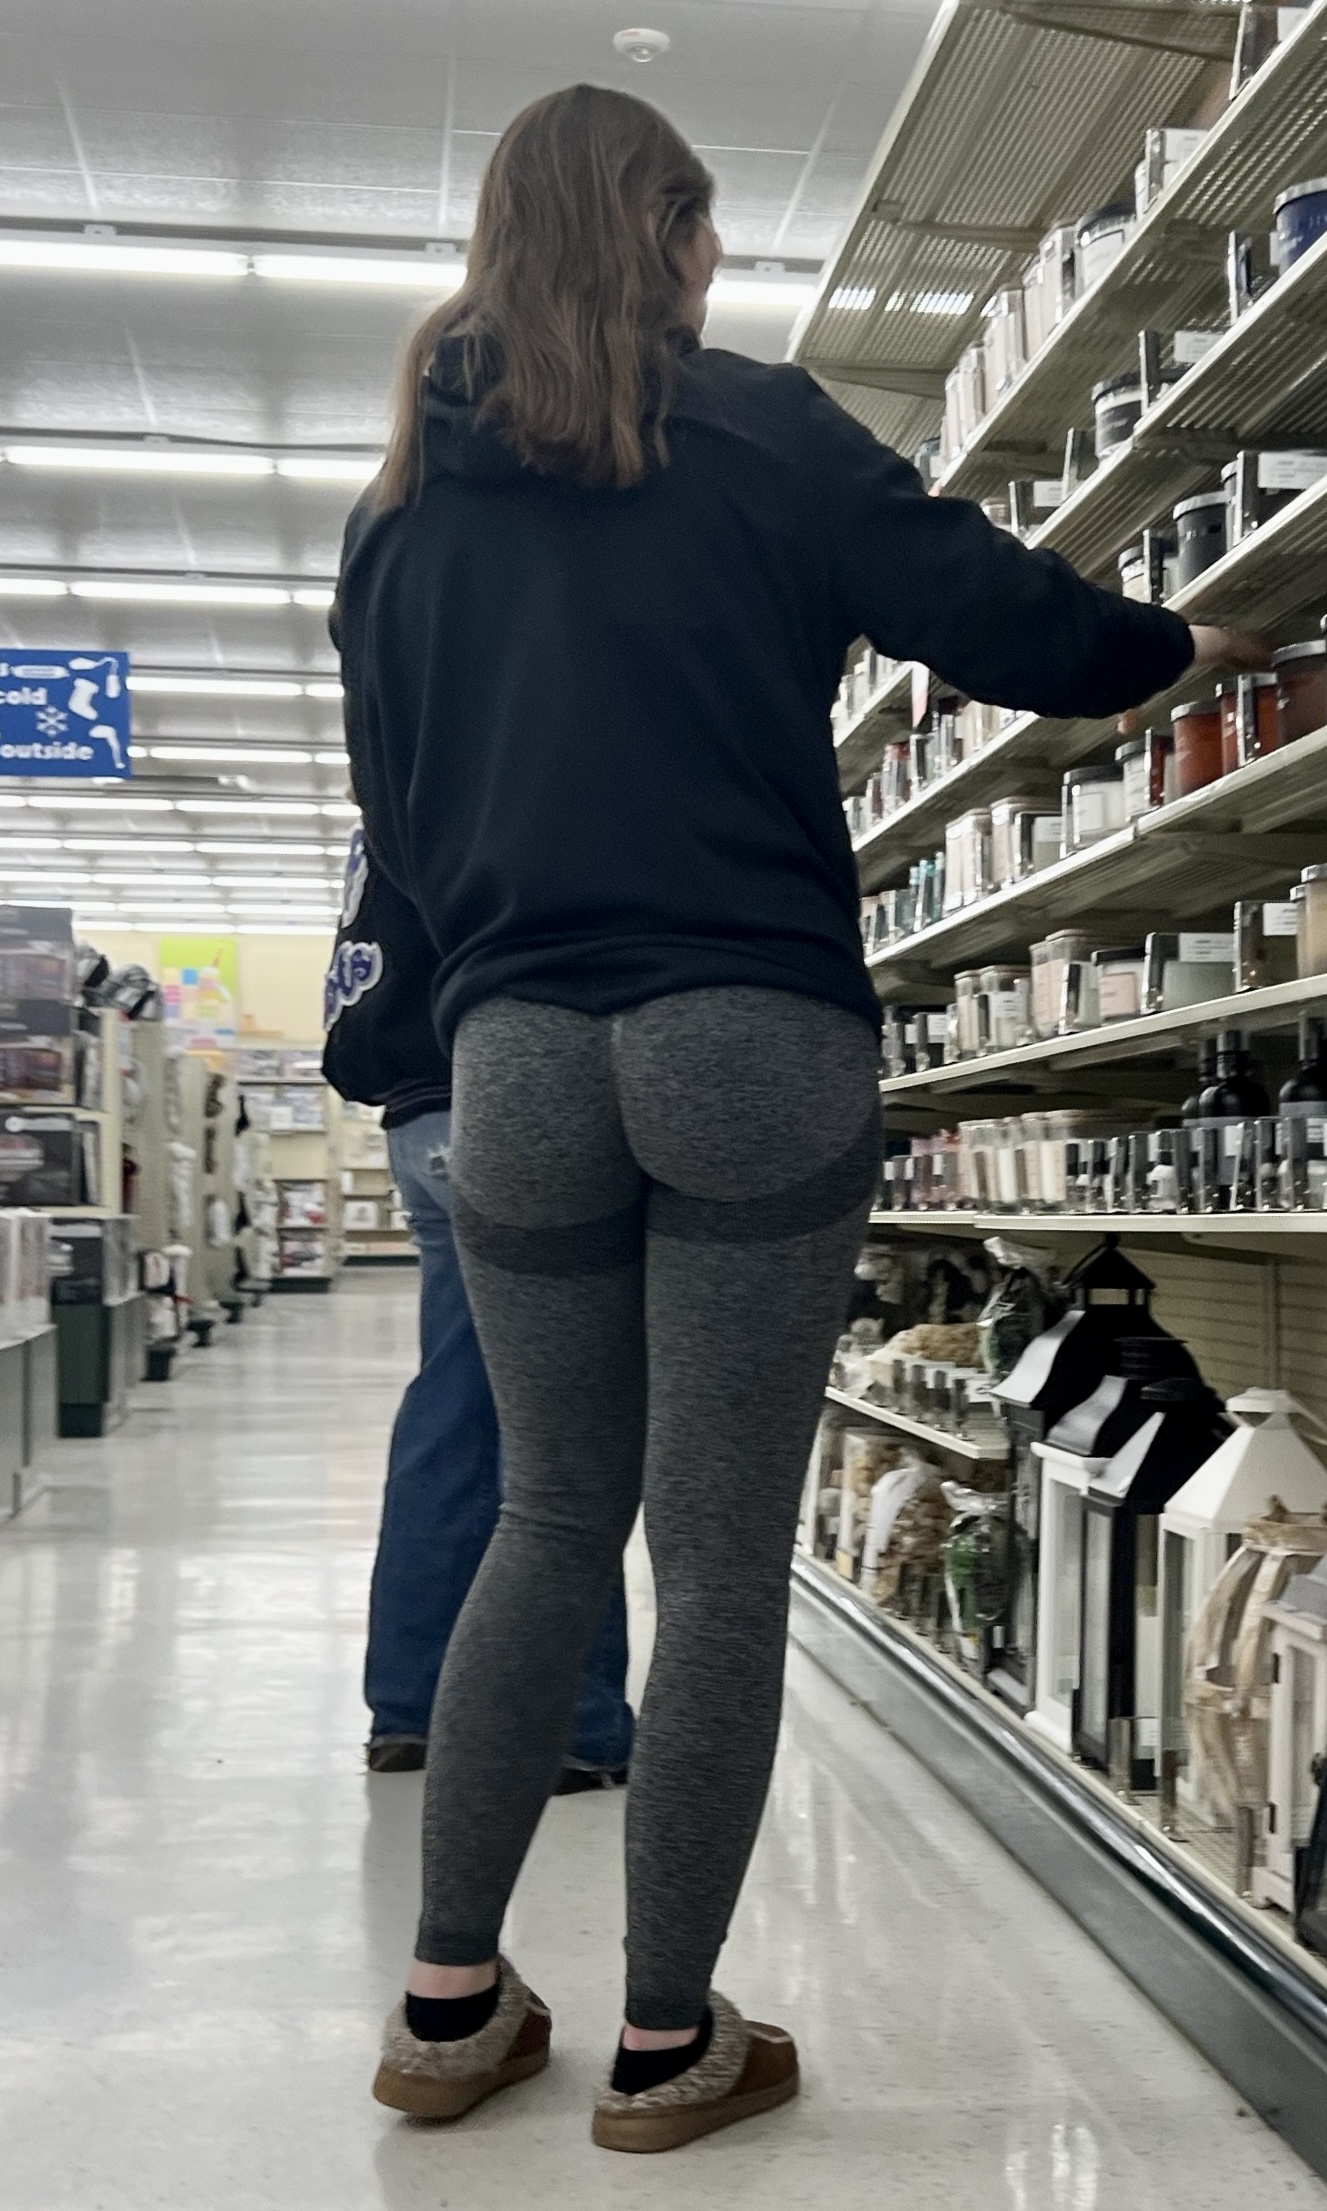 Nice ass in leggings😍🤤 - Spandex, Leggings & Yoga Pants - Forum